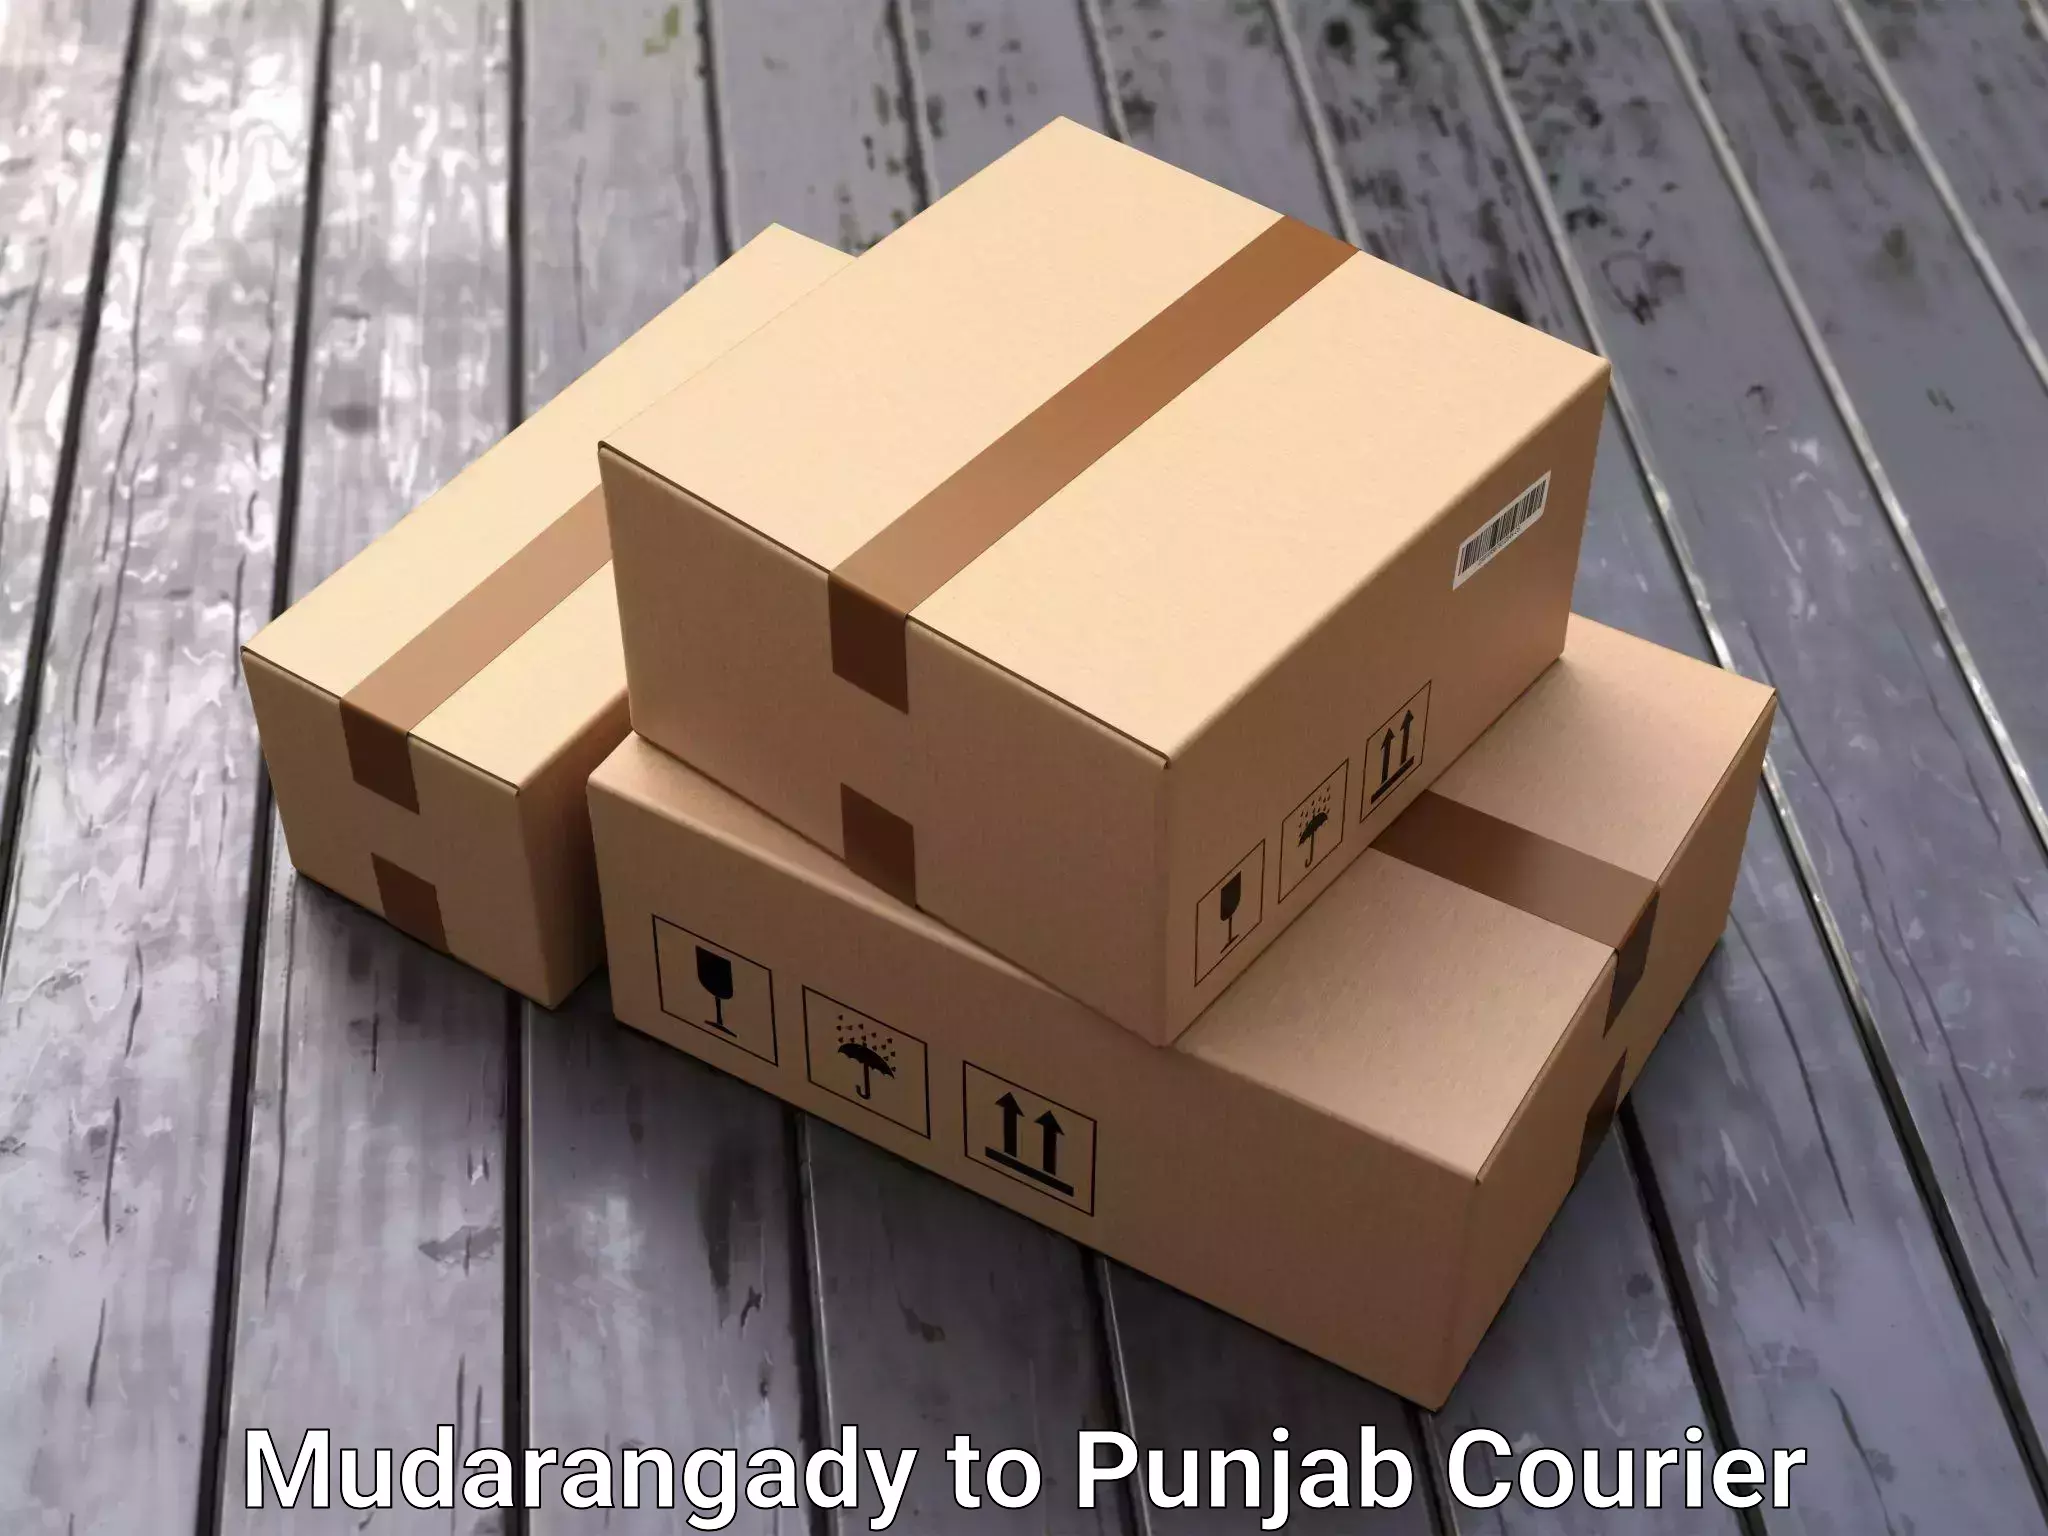 Budget-friendly movers Mudarangady to Punjab